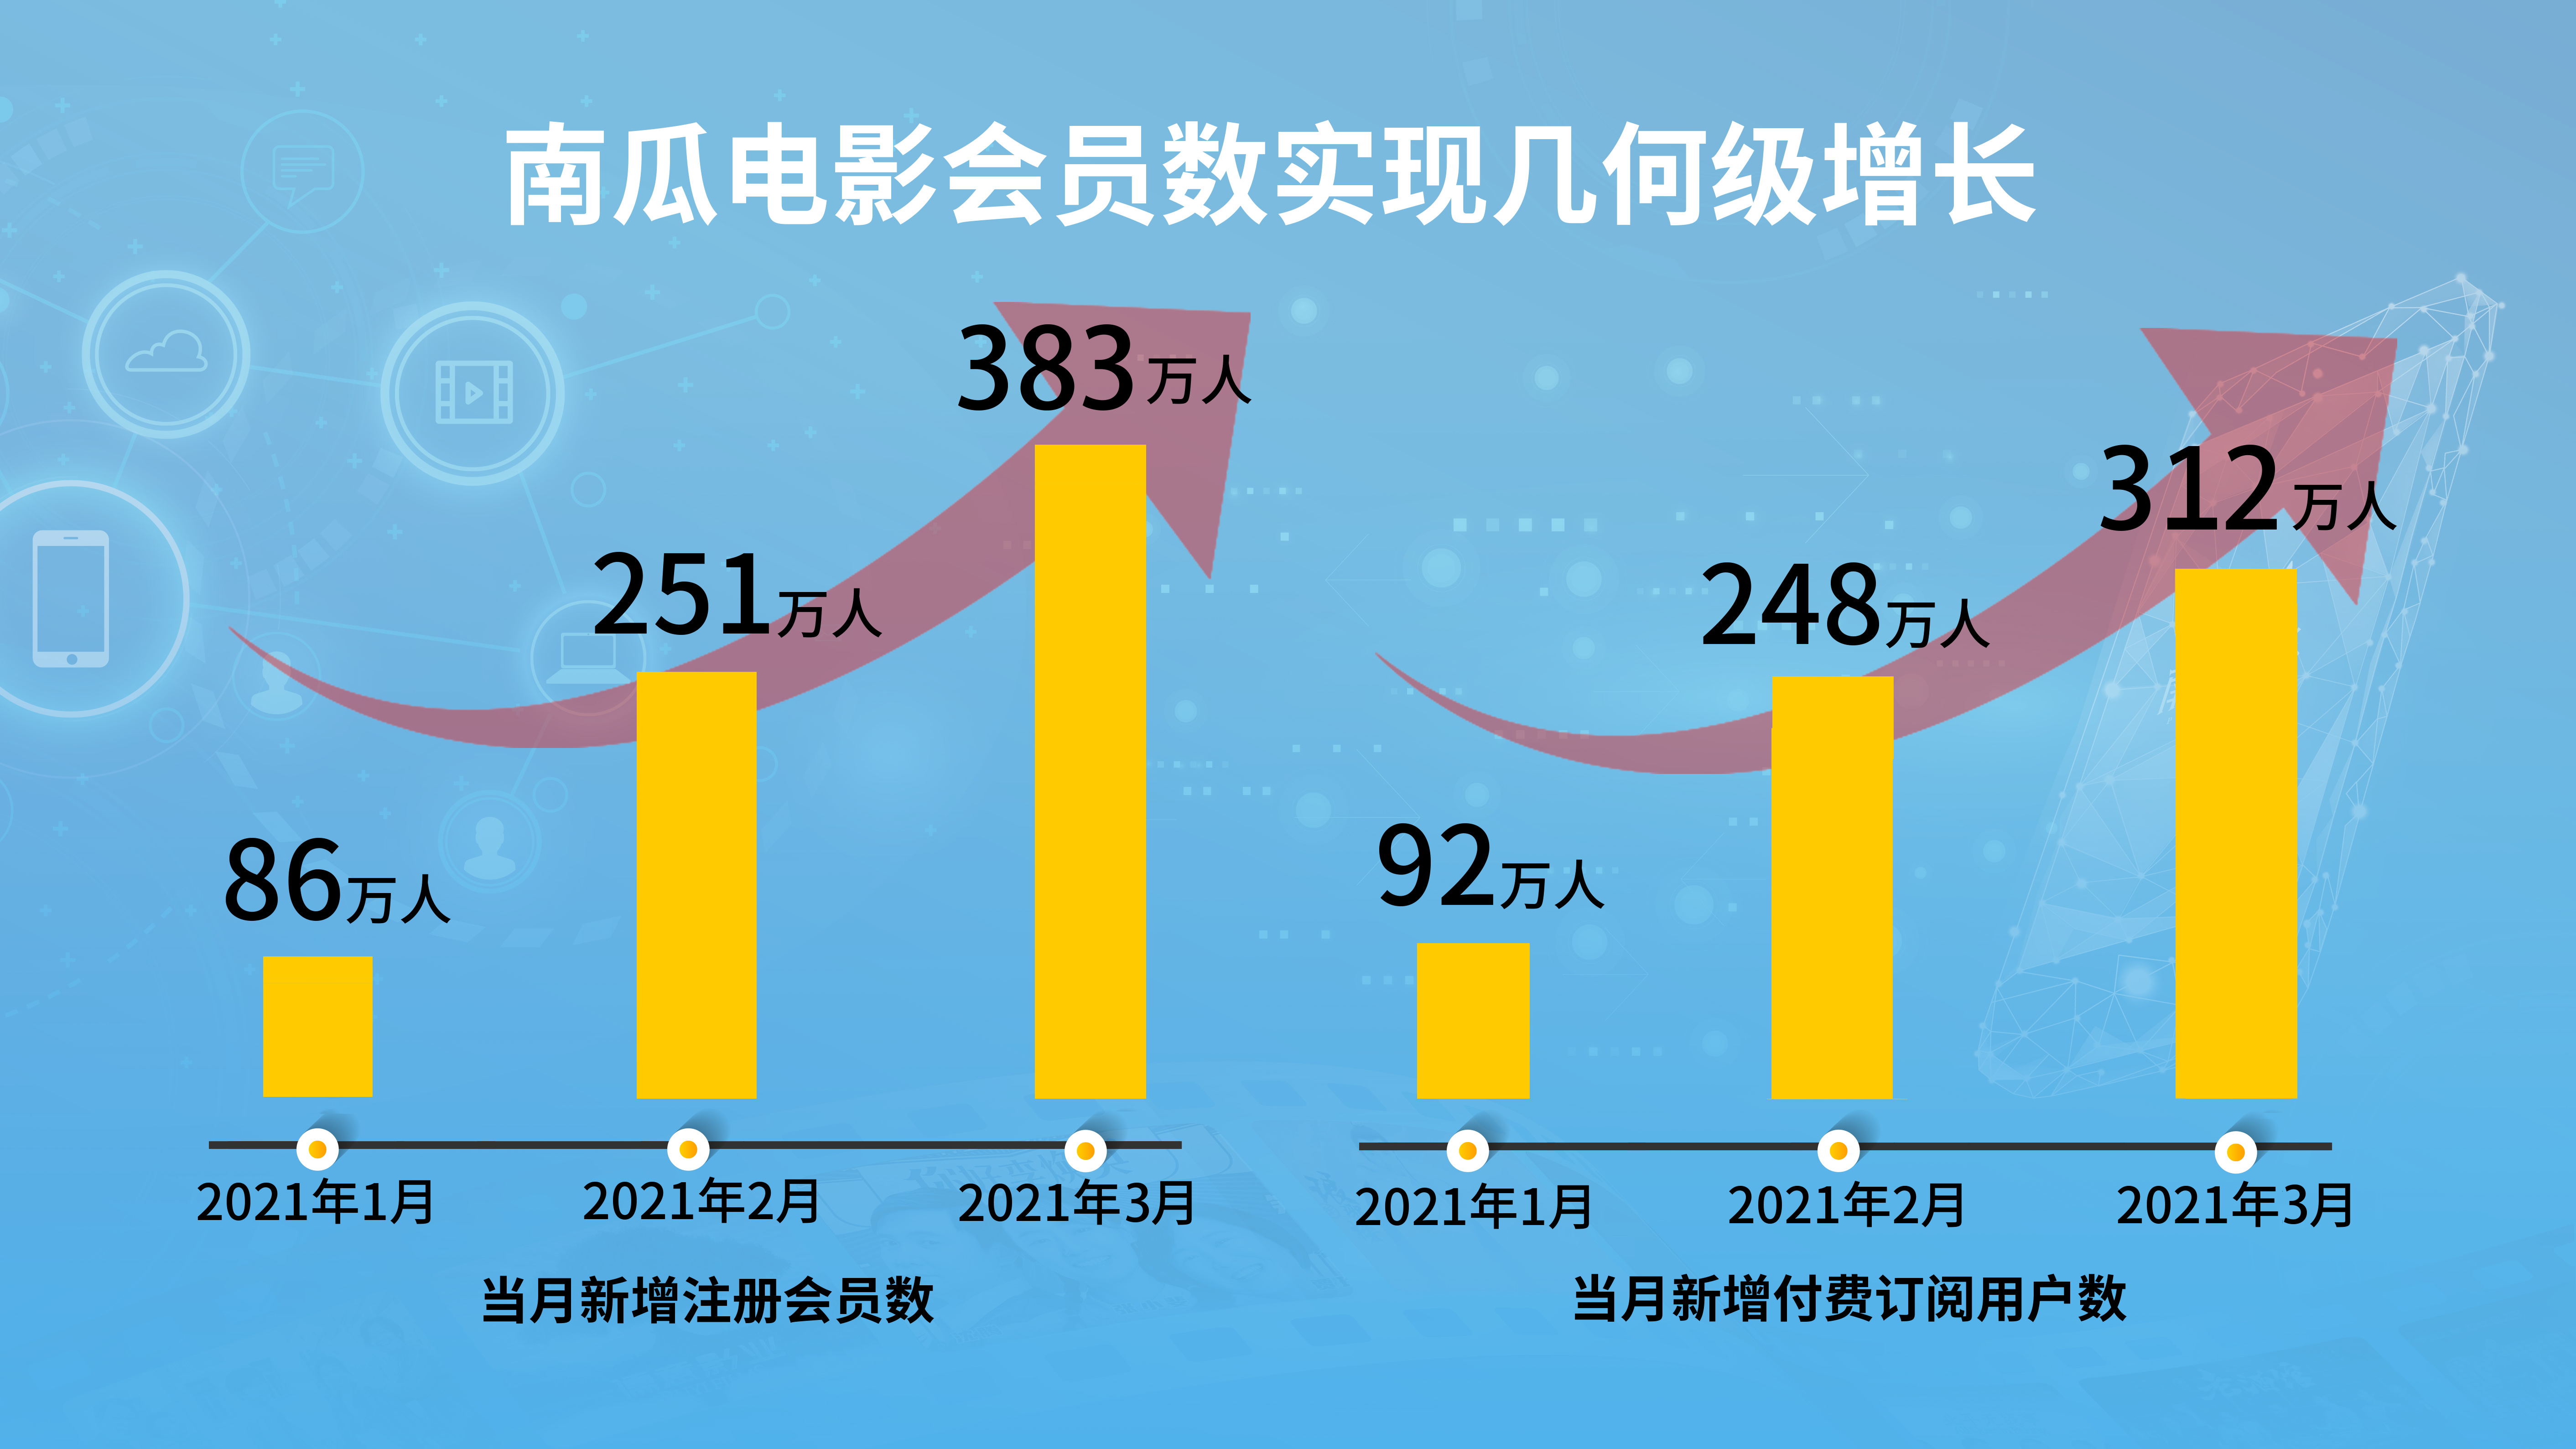 恒腾网络成流媒体界“黑马” 3月付费用户新增312.6万